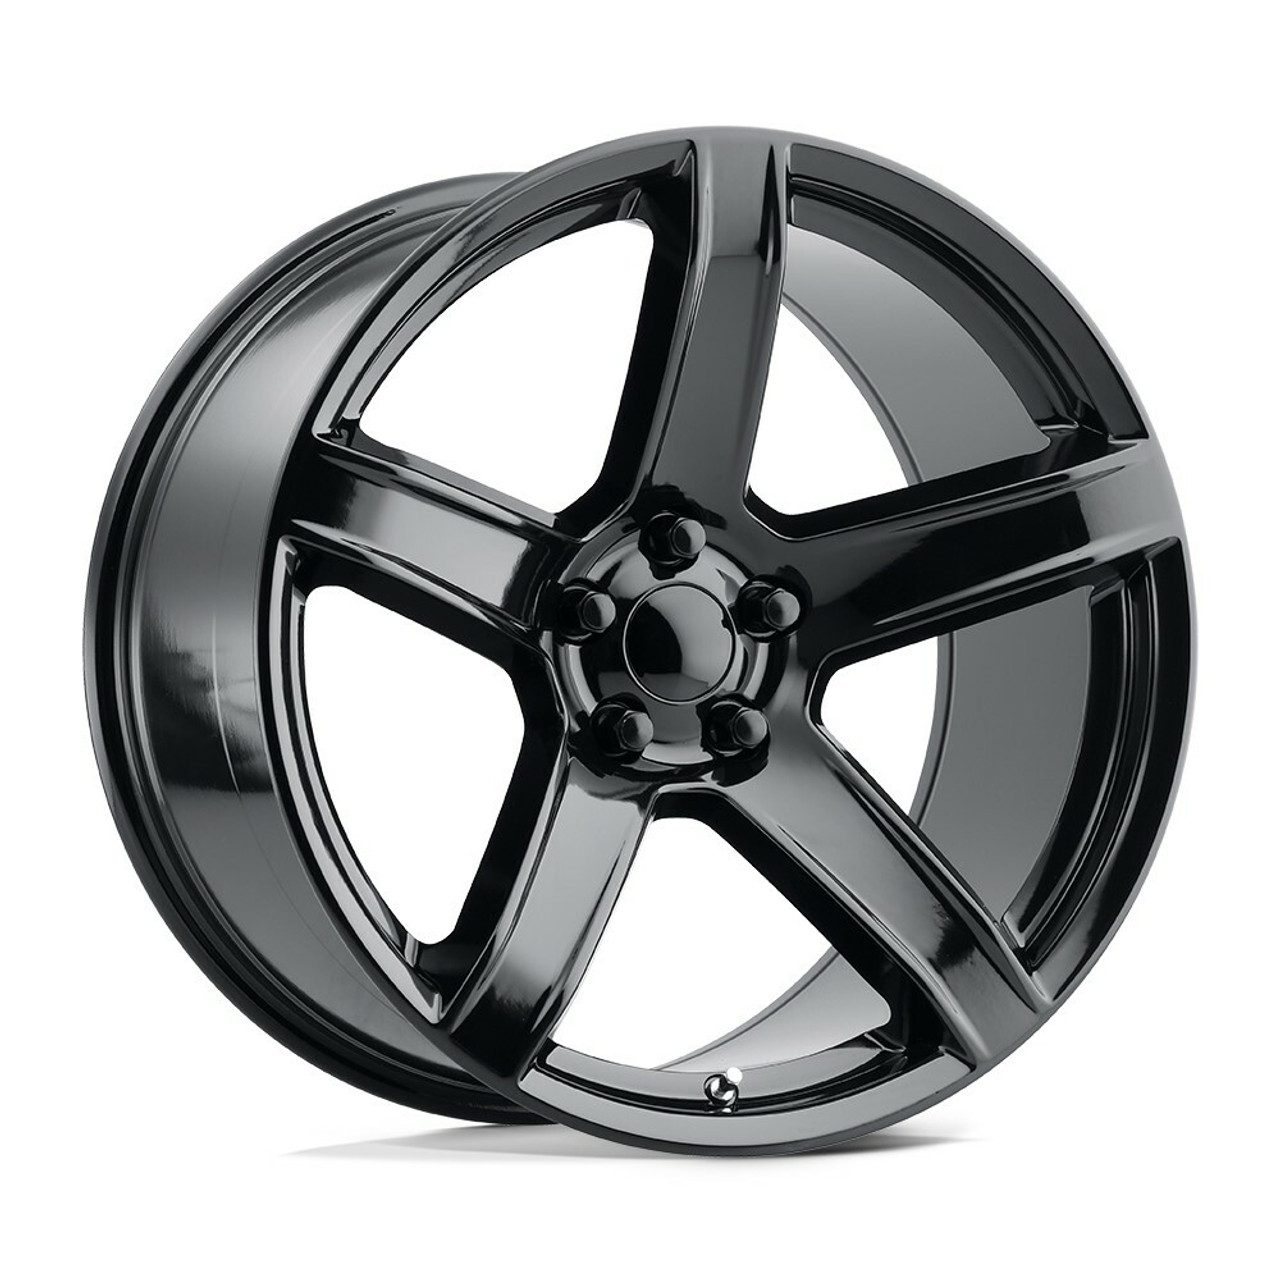 Set 4 Performance Replicas PR209 20x10.5 5x115 Gloss Black Wheels 20" 22mm Rims